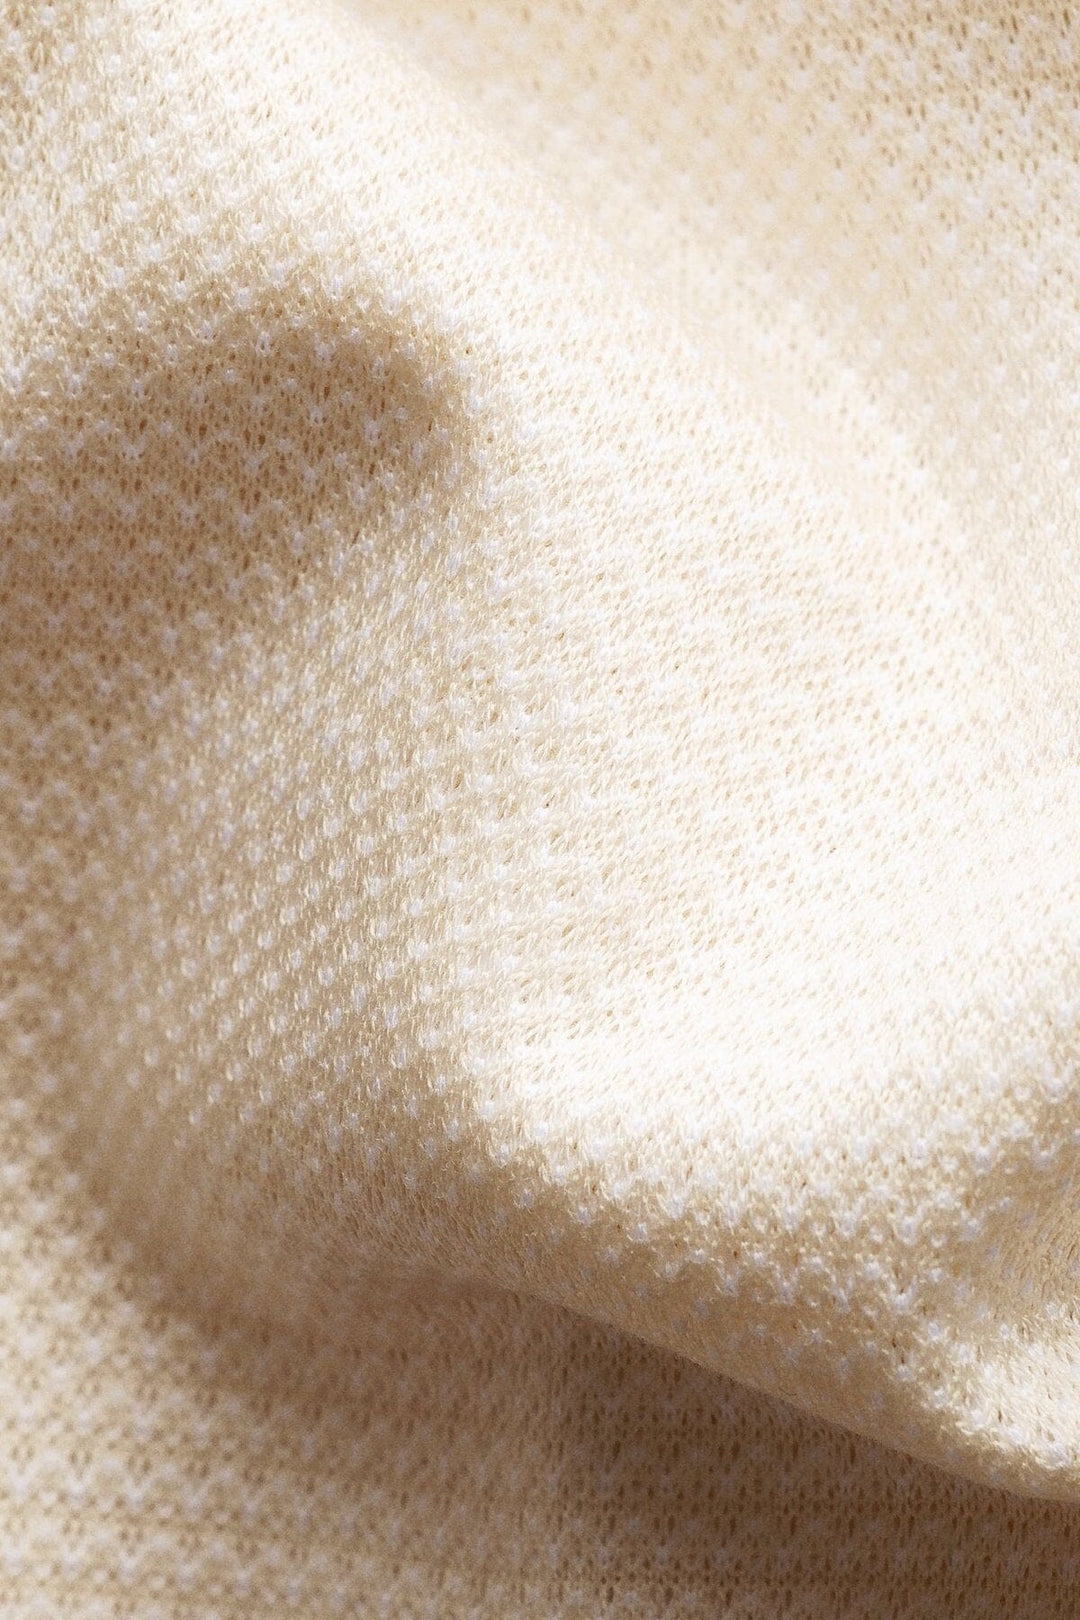 Polo à manches courtes en jacquard zigzag blanc Eton 